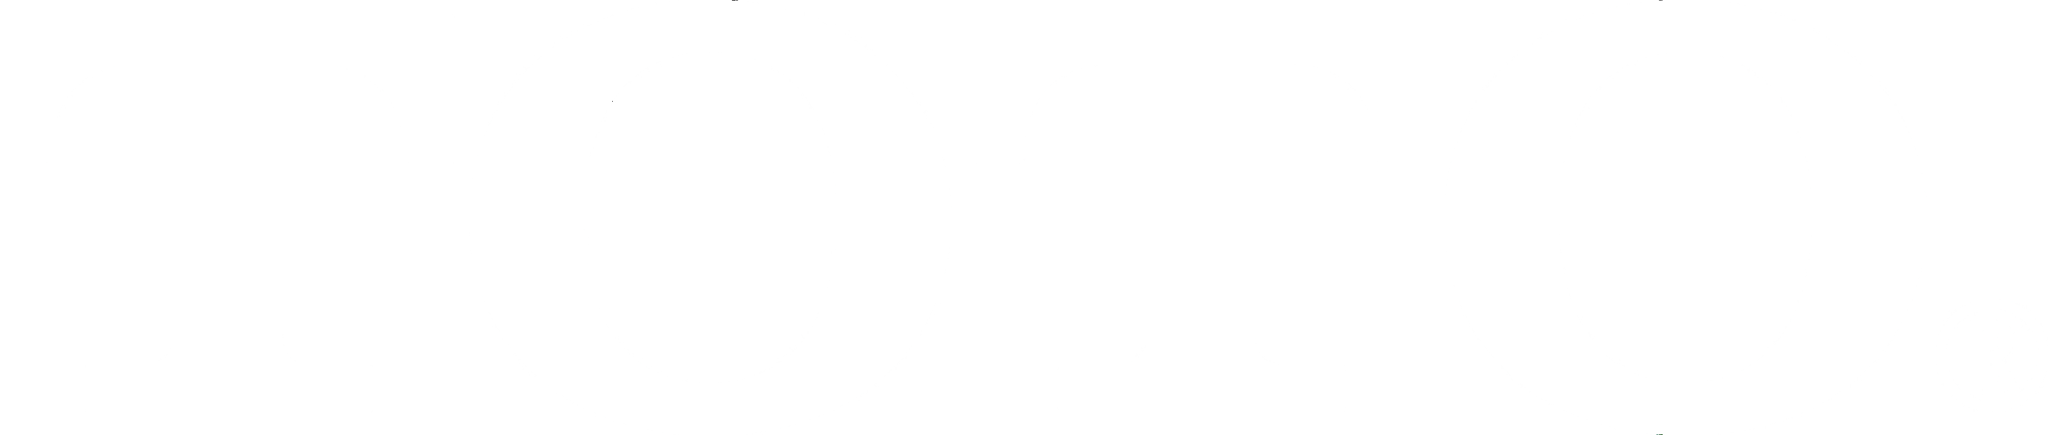 toto-logo-b